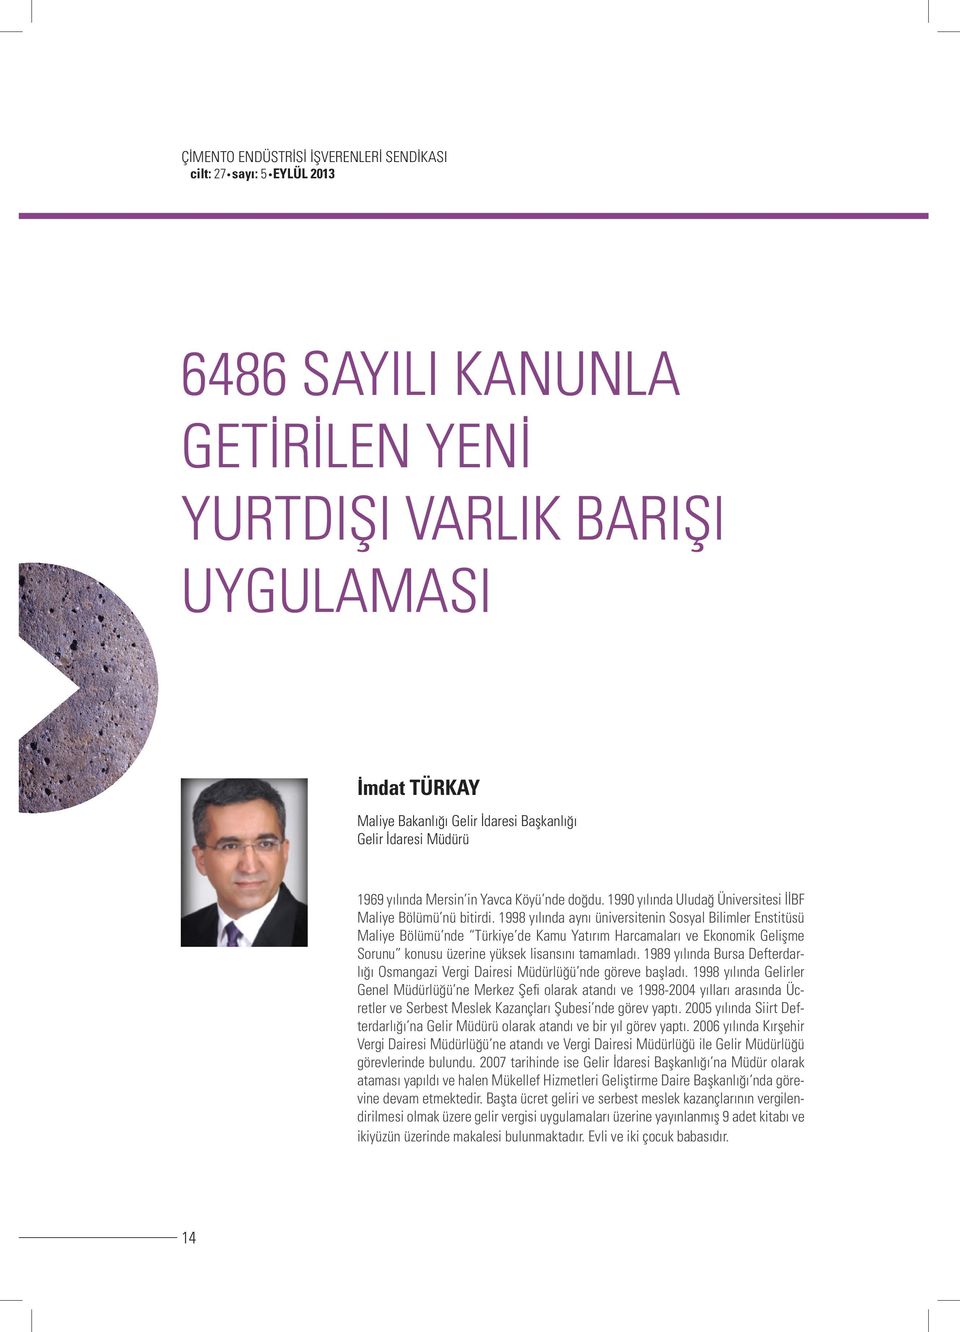 1998 yılında aynı üniversitenin Sosyal Bilimler Enstitüsü Maliye Bölümü nde Türkiye de Kamu Yatırım Harcamaları ve Ekonomik Gelişme Sorunu konusu üzerine yüksek lisansını tamamladı.